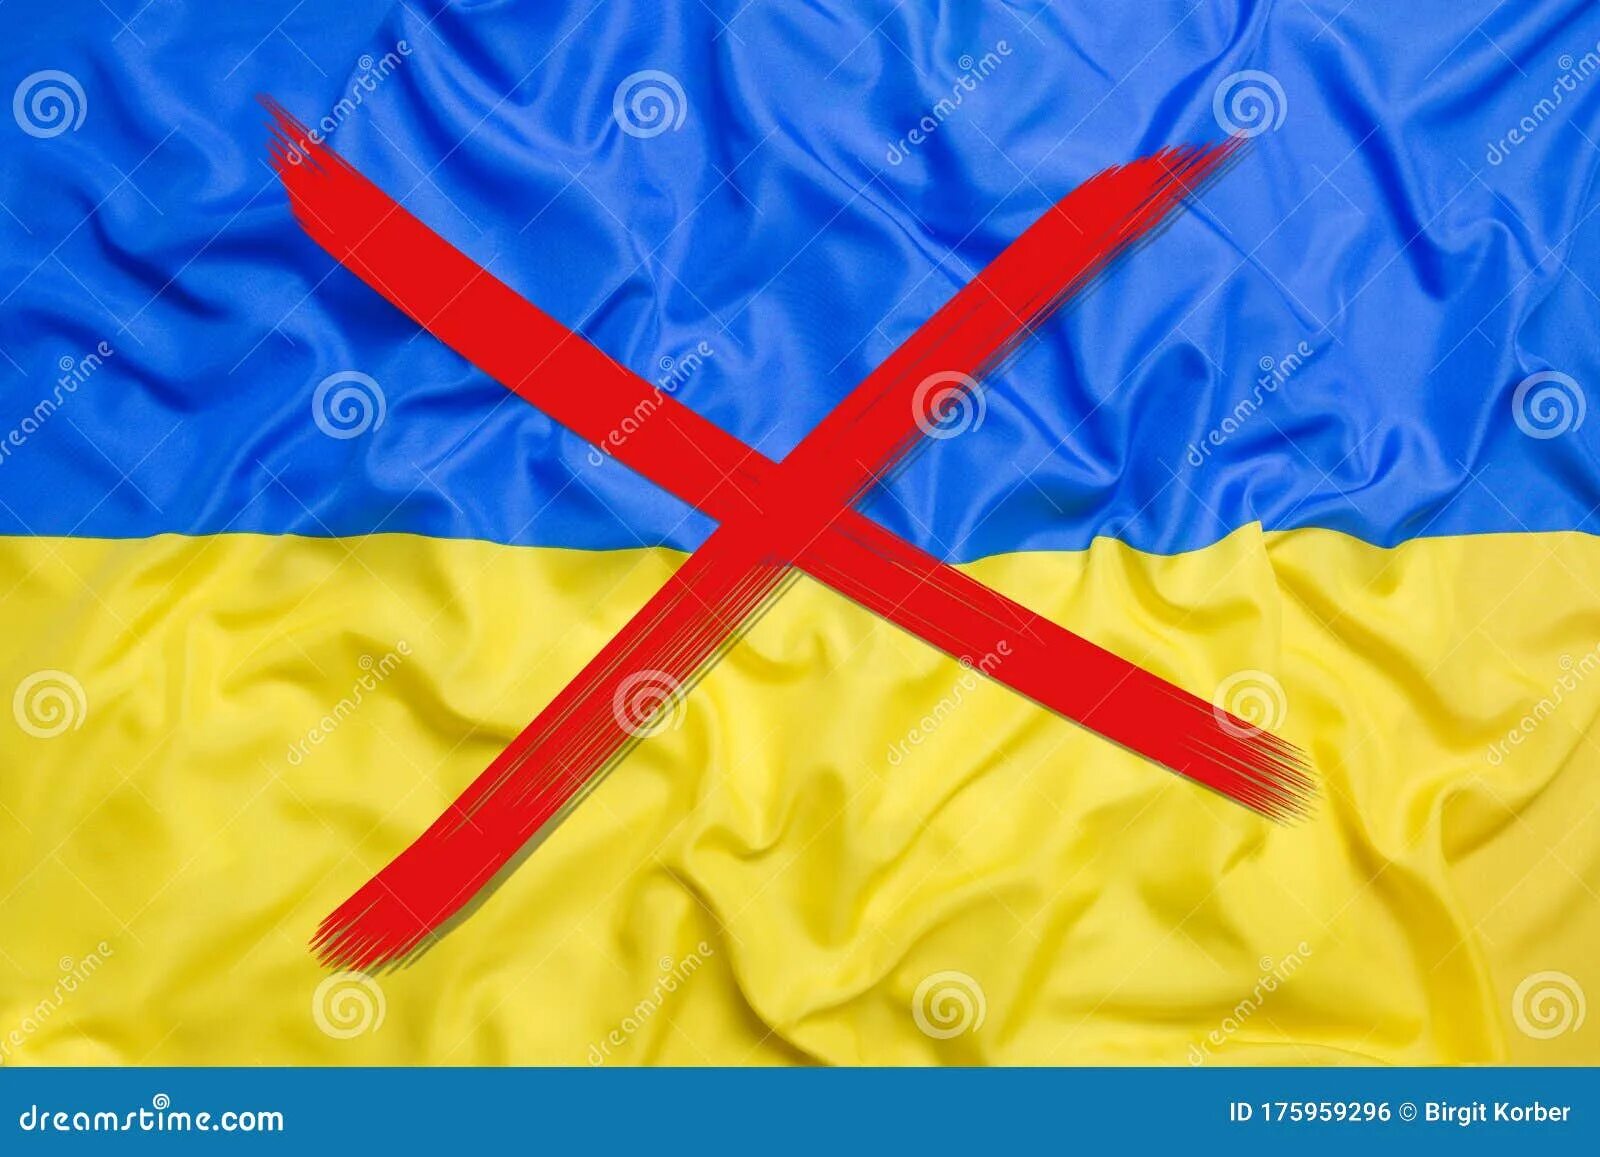 Флаг Украины. Перечеркнутый флаг Украины. Перечеркнутый украинский флаг. Украинский флажок.